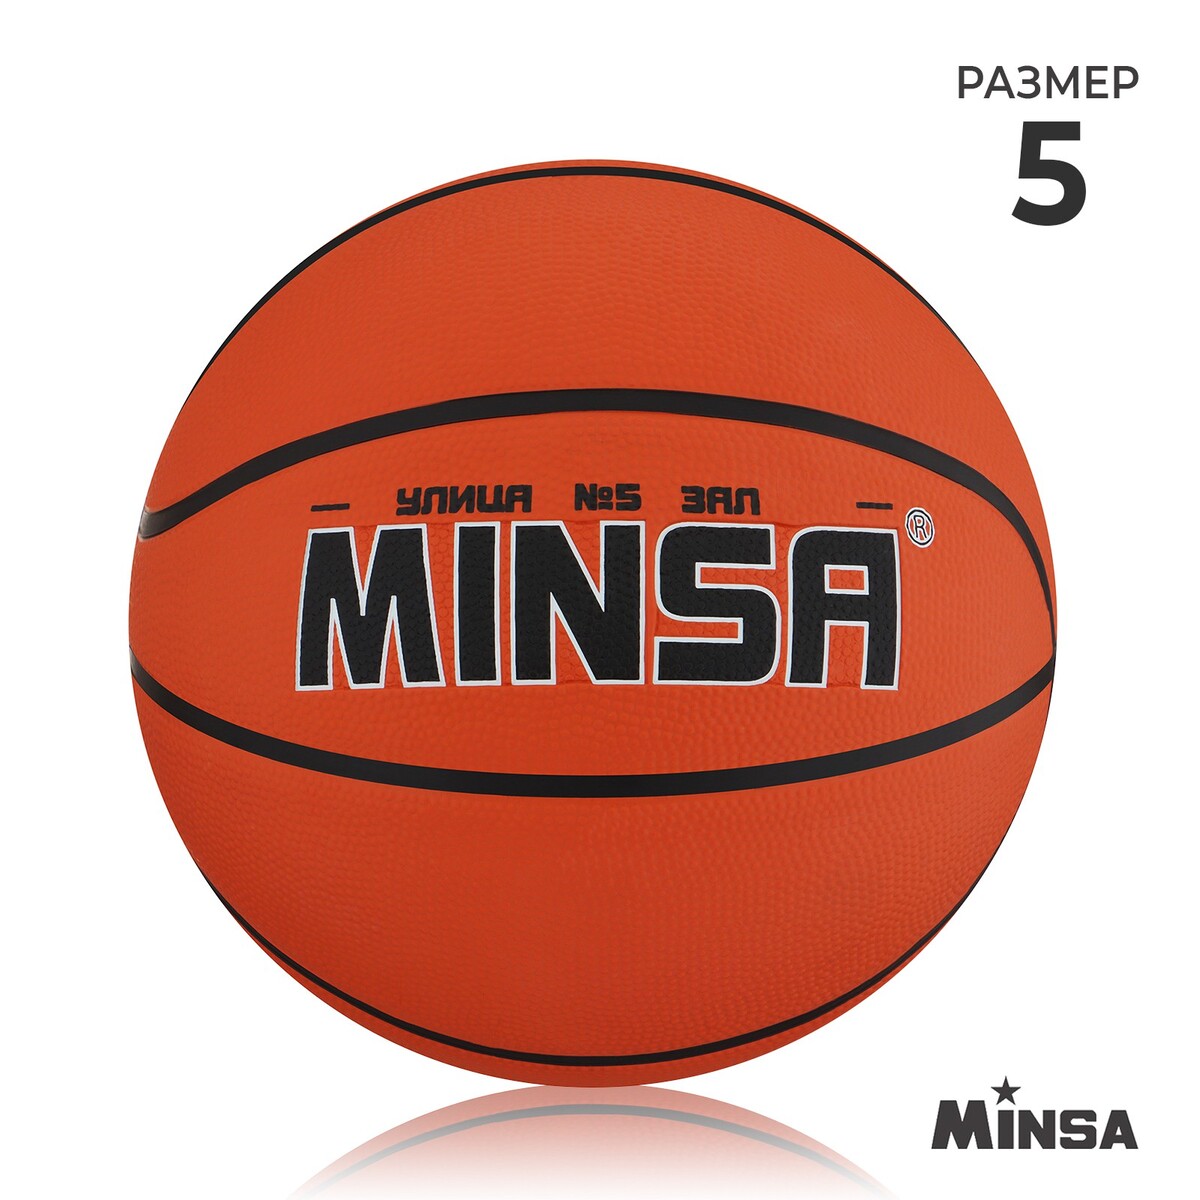 Мяч баскетбольный minsa, пвх, клееный, 8 панелей, р. 5 мяч баскетбольный minsa sport пвх клееный 8 панелей р 5